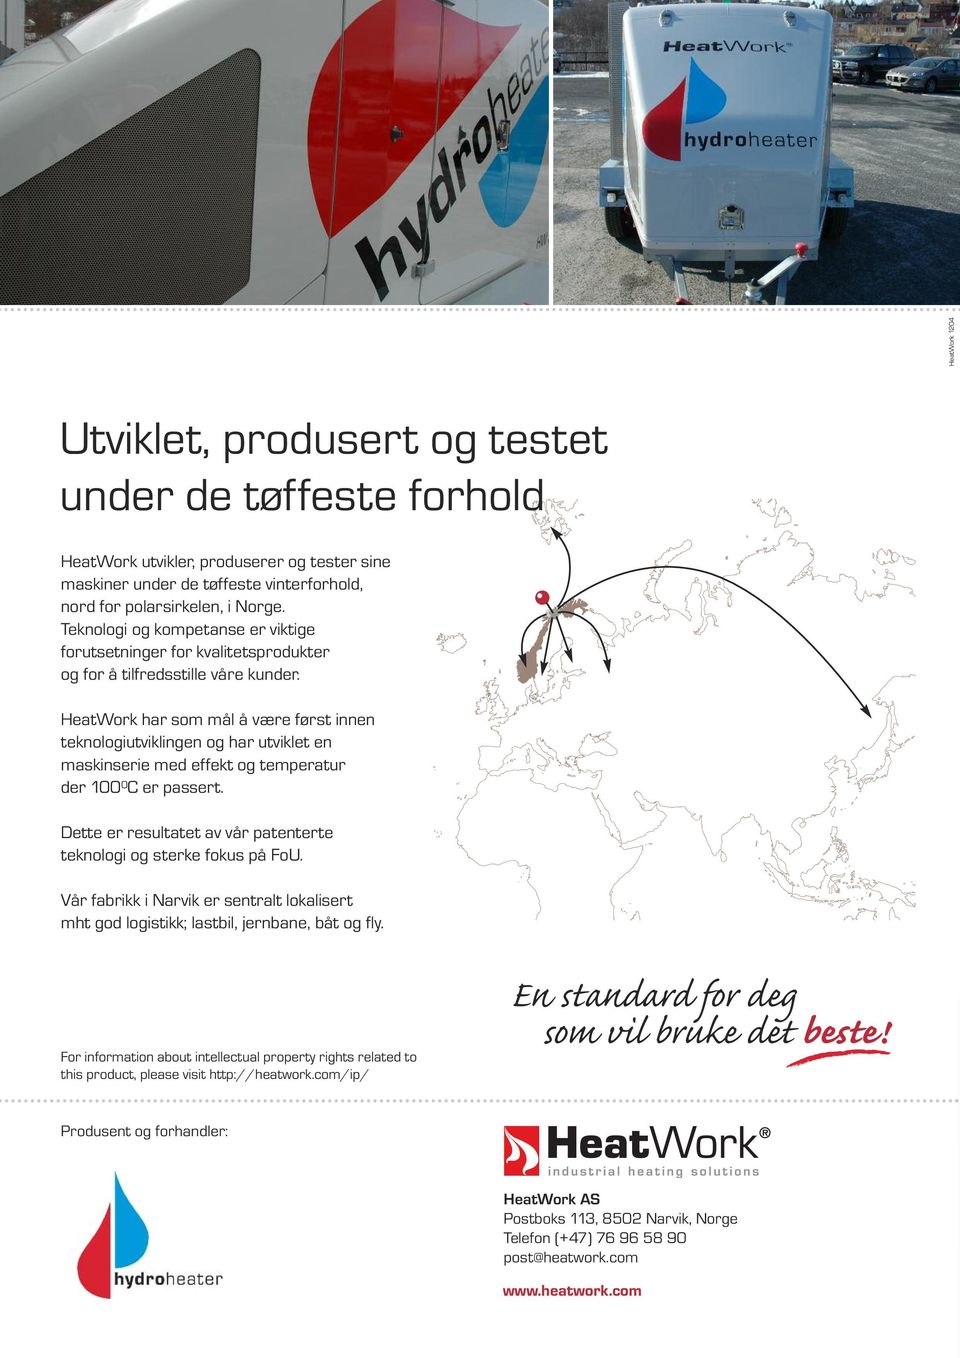 HeatWork har som mål å være først innen teknologiutviklingen og har utviklet en maskinserie med effekt og temperatur der 100 0 C er passert.